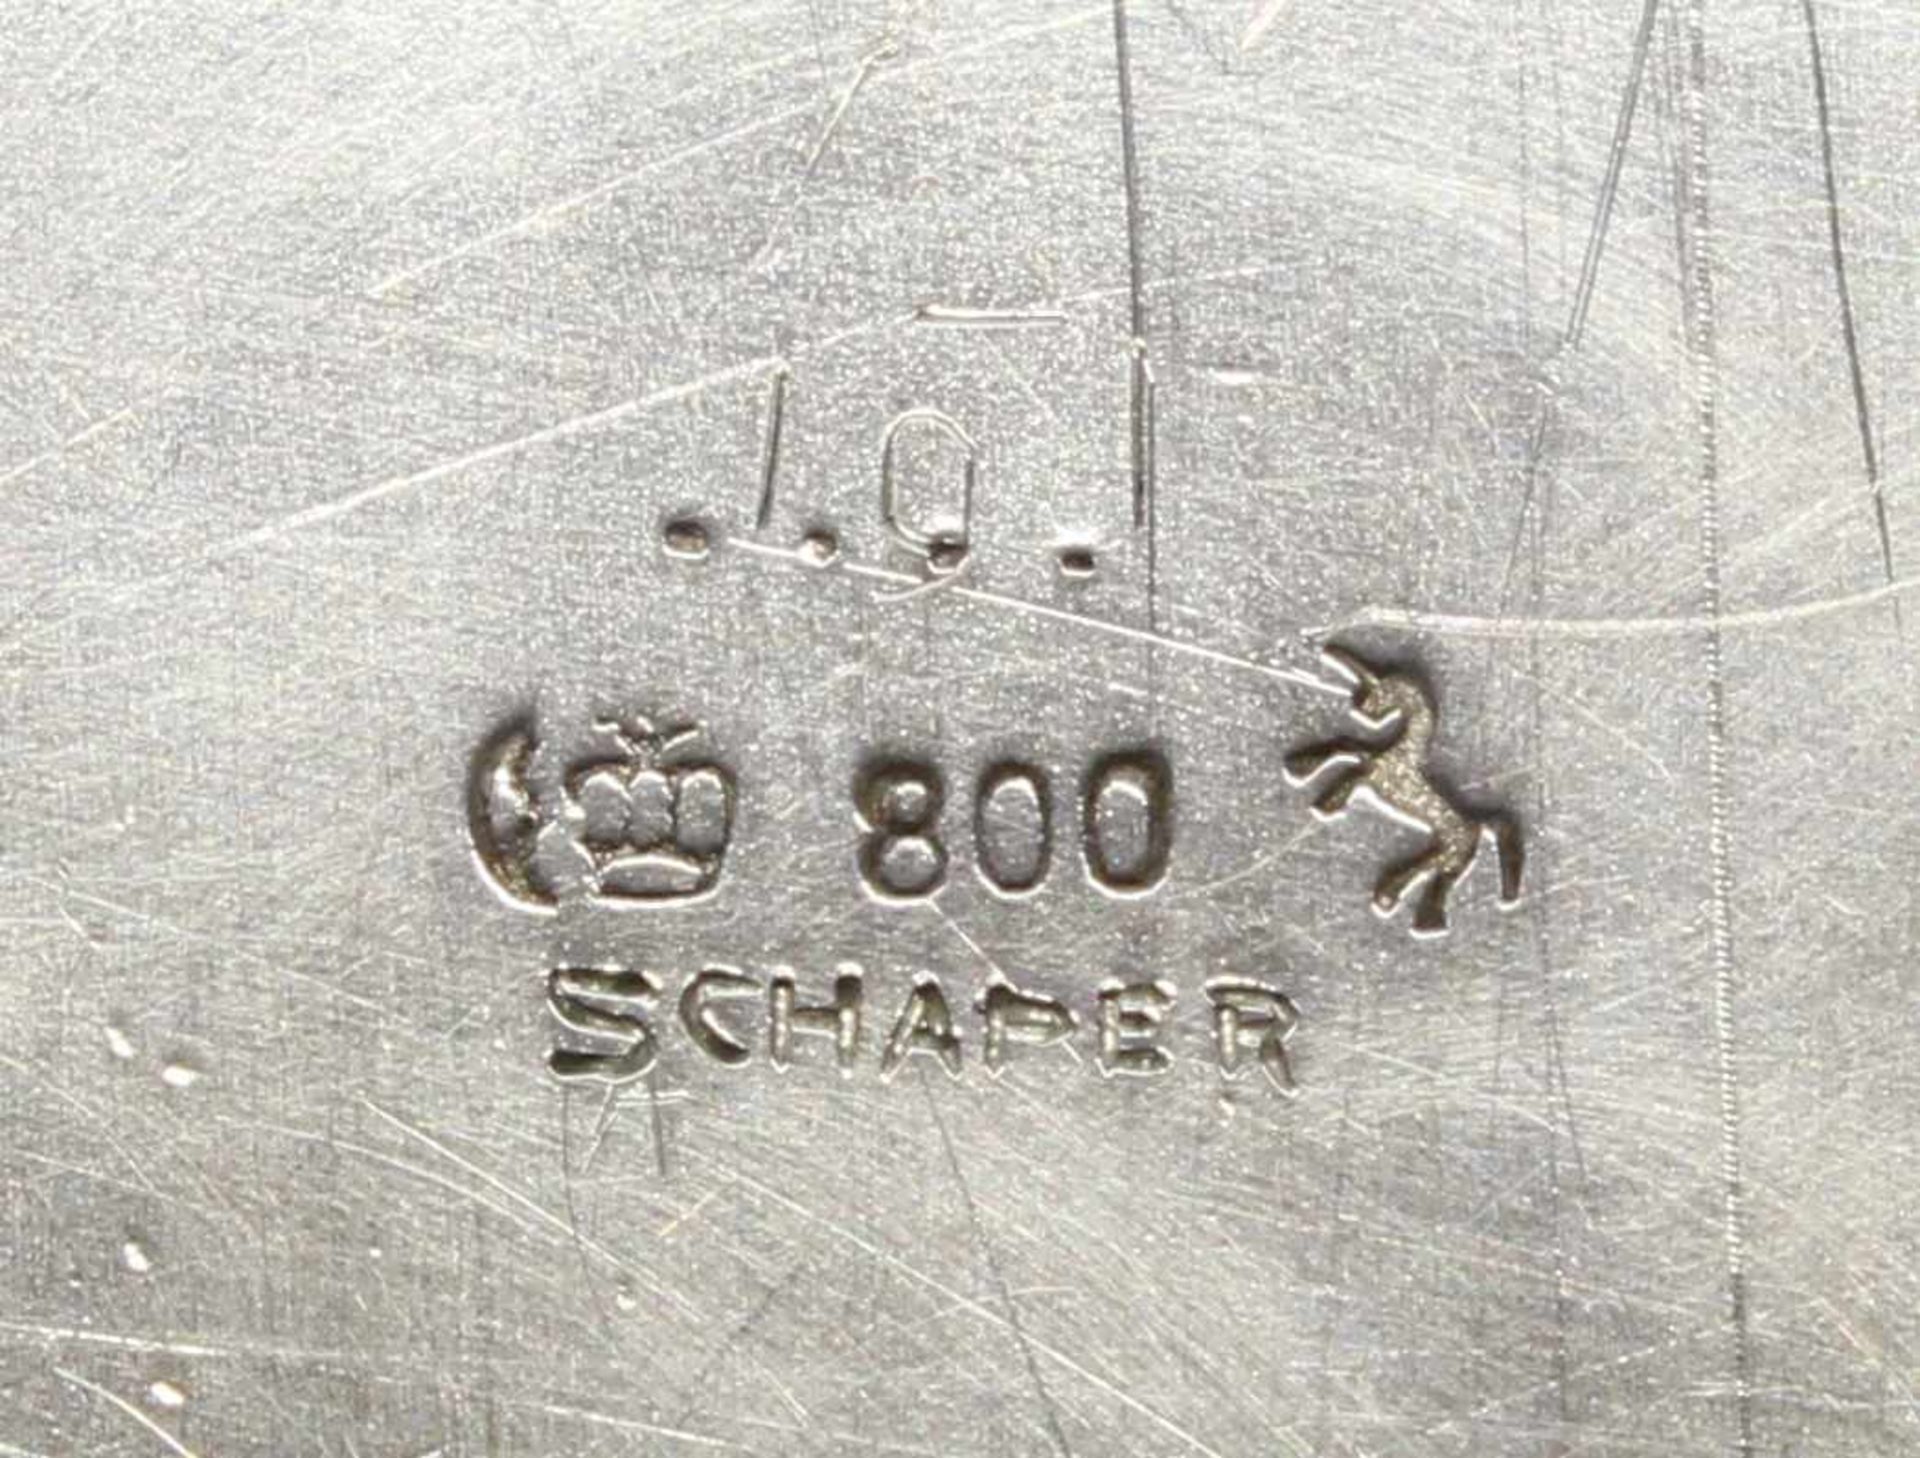 Vorlegeplatte, Silber 800, Gbr. Kühn, oval, passig-geschweifter Profilrand, umseitig datierte - Image 3 of 4